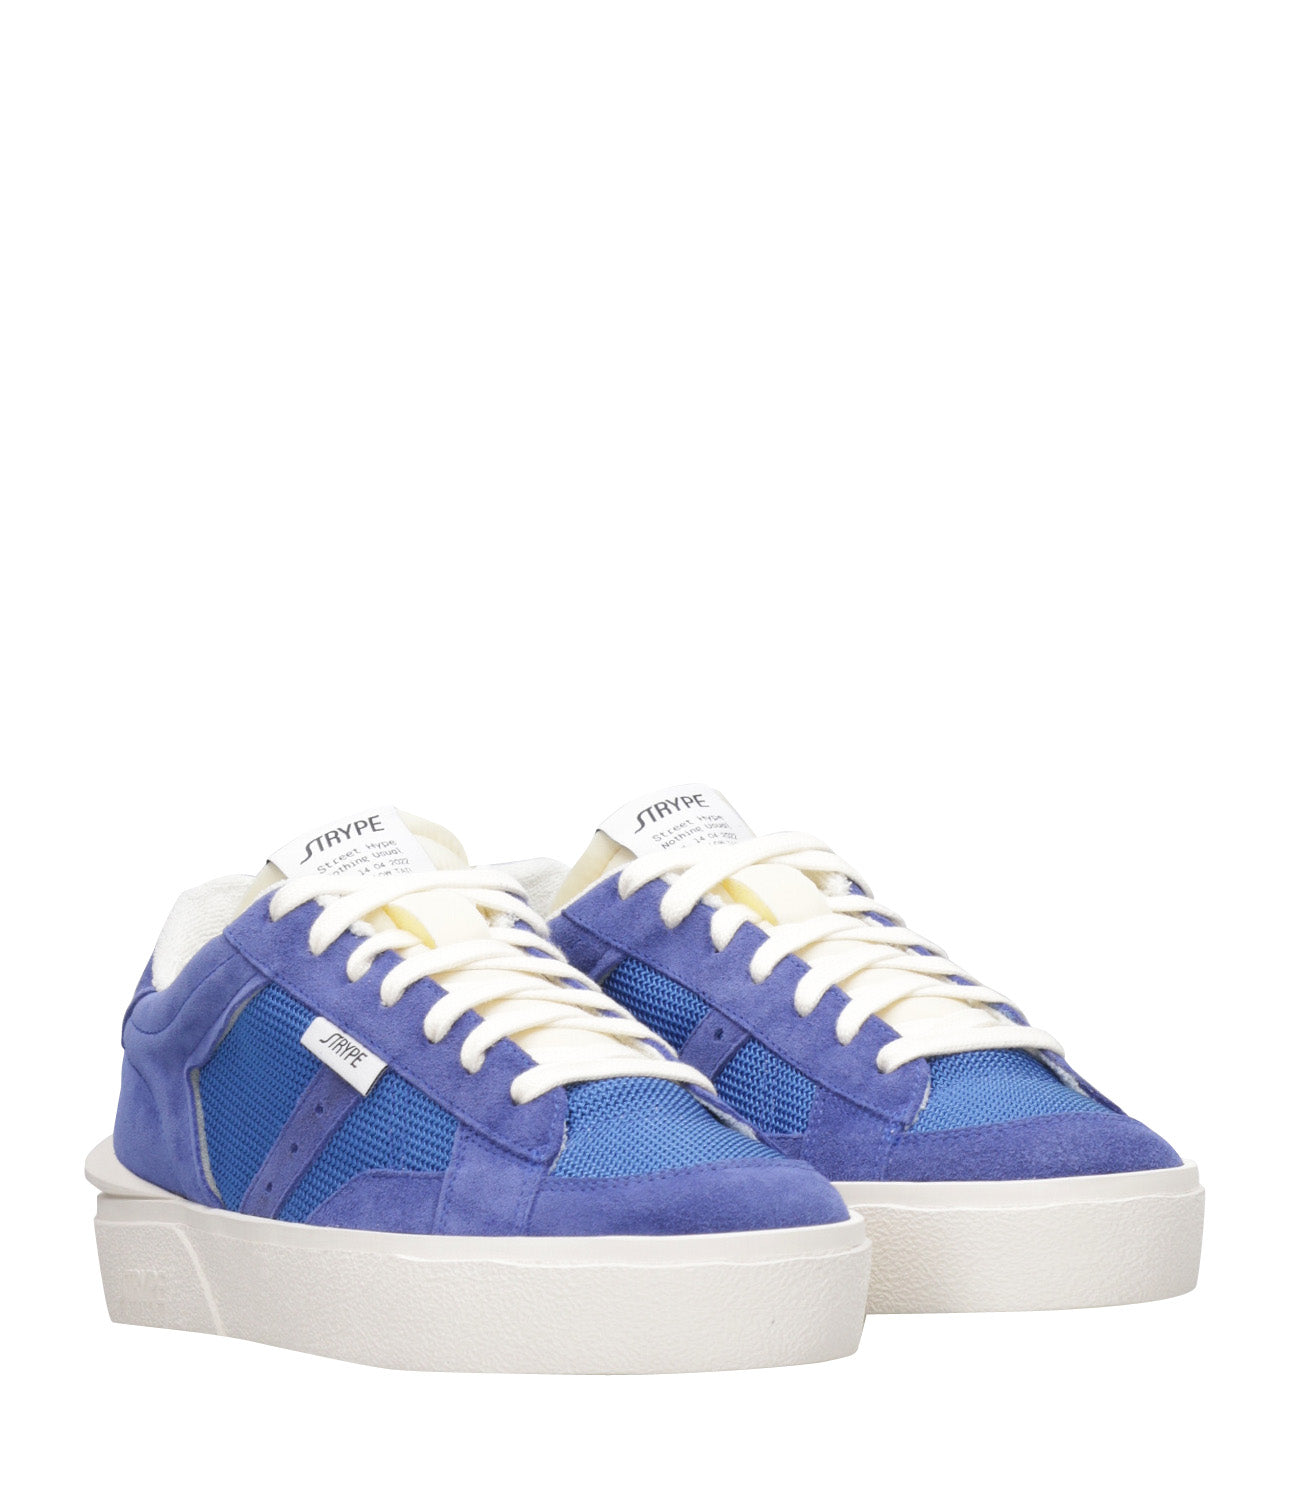 Strype | Sneakers Basket Low Navy Blue